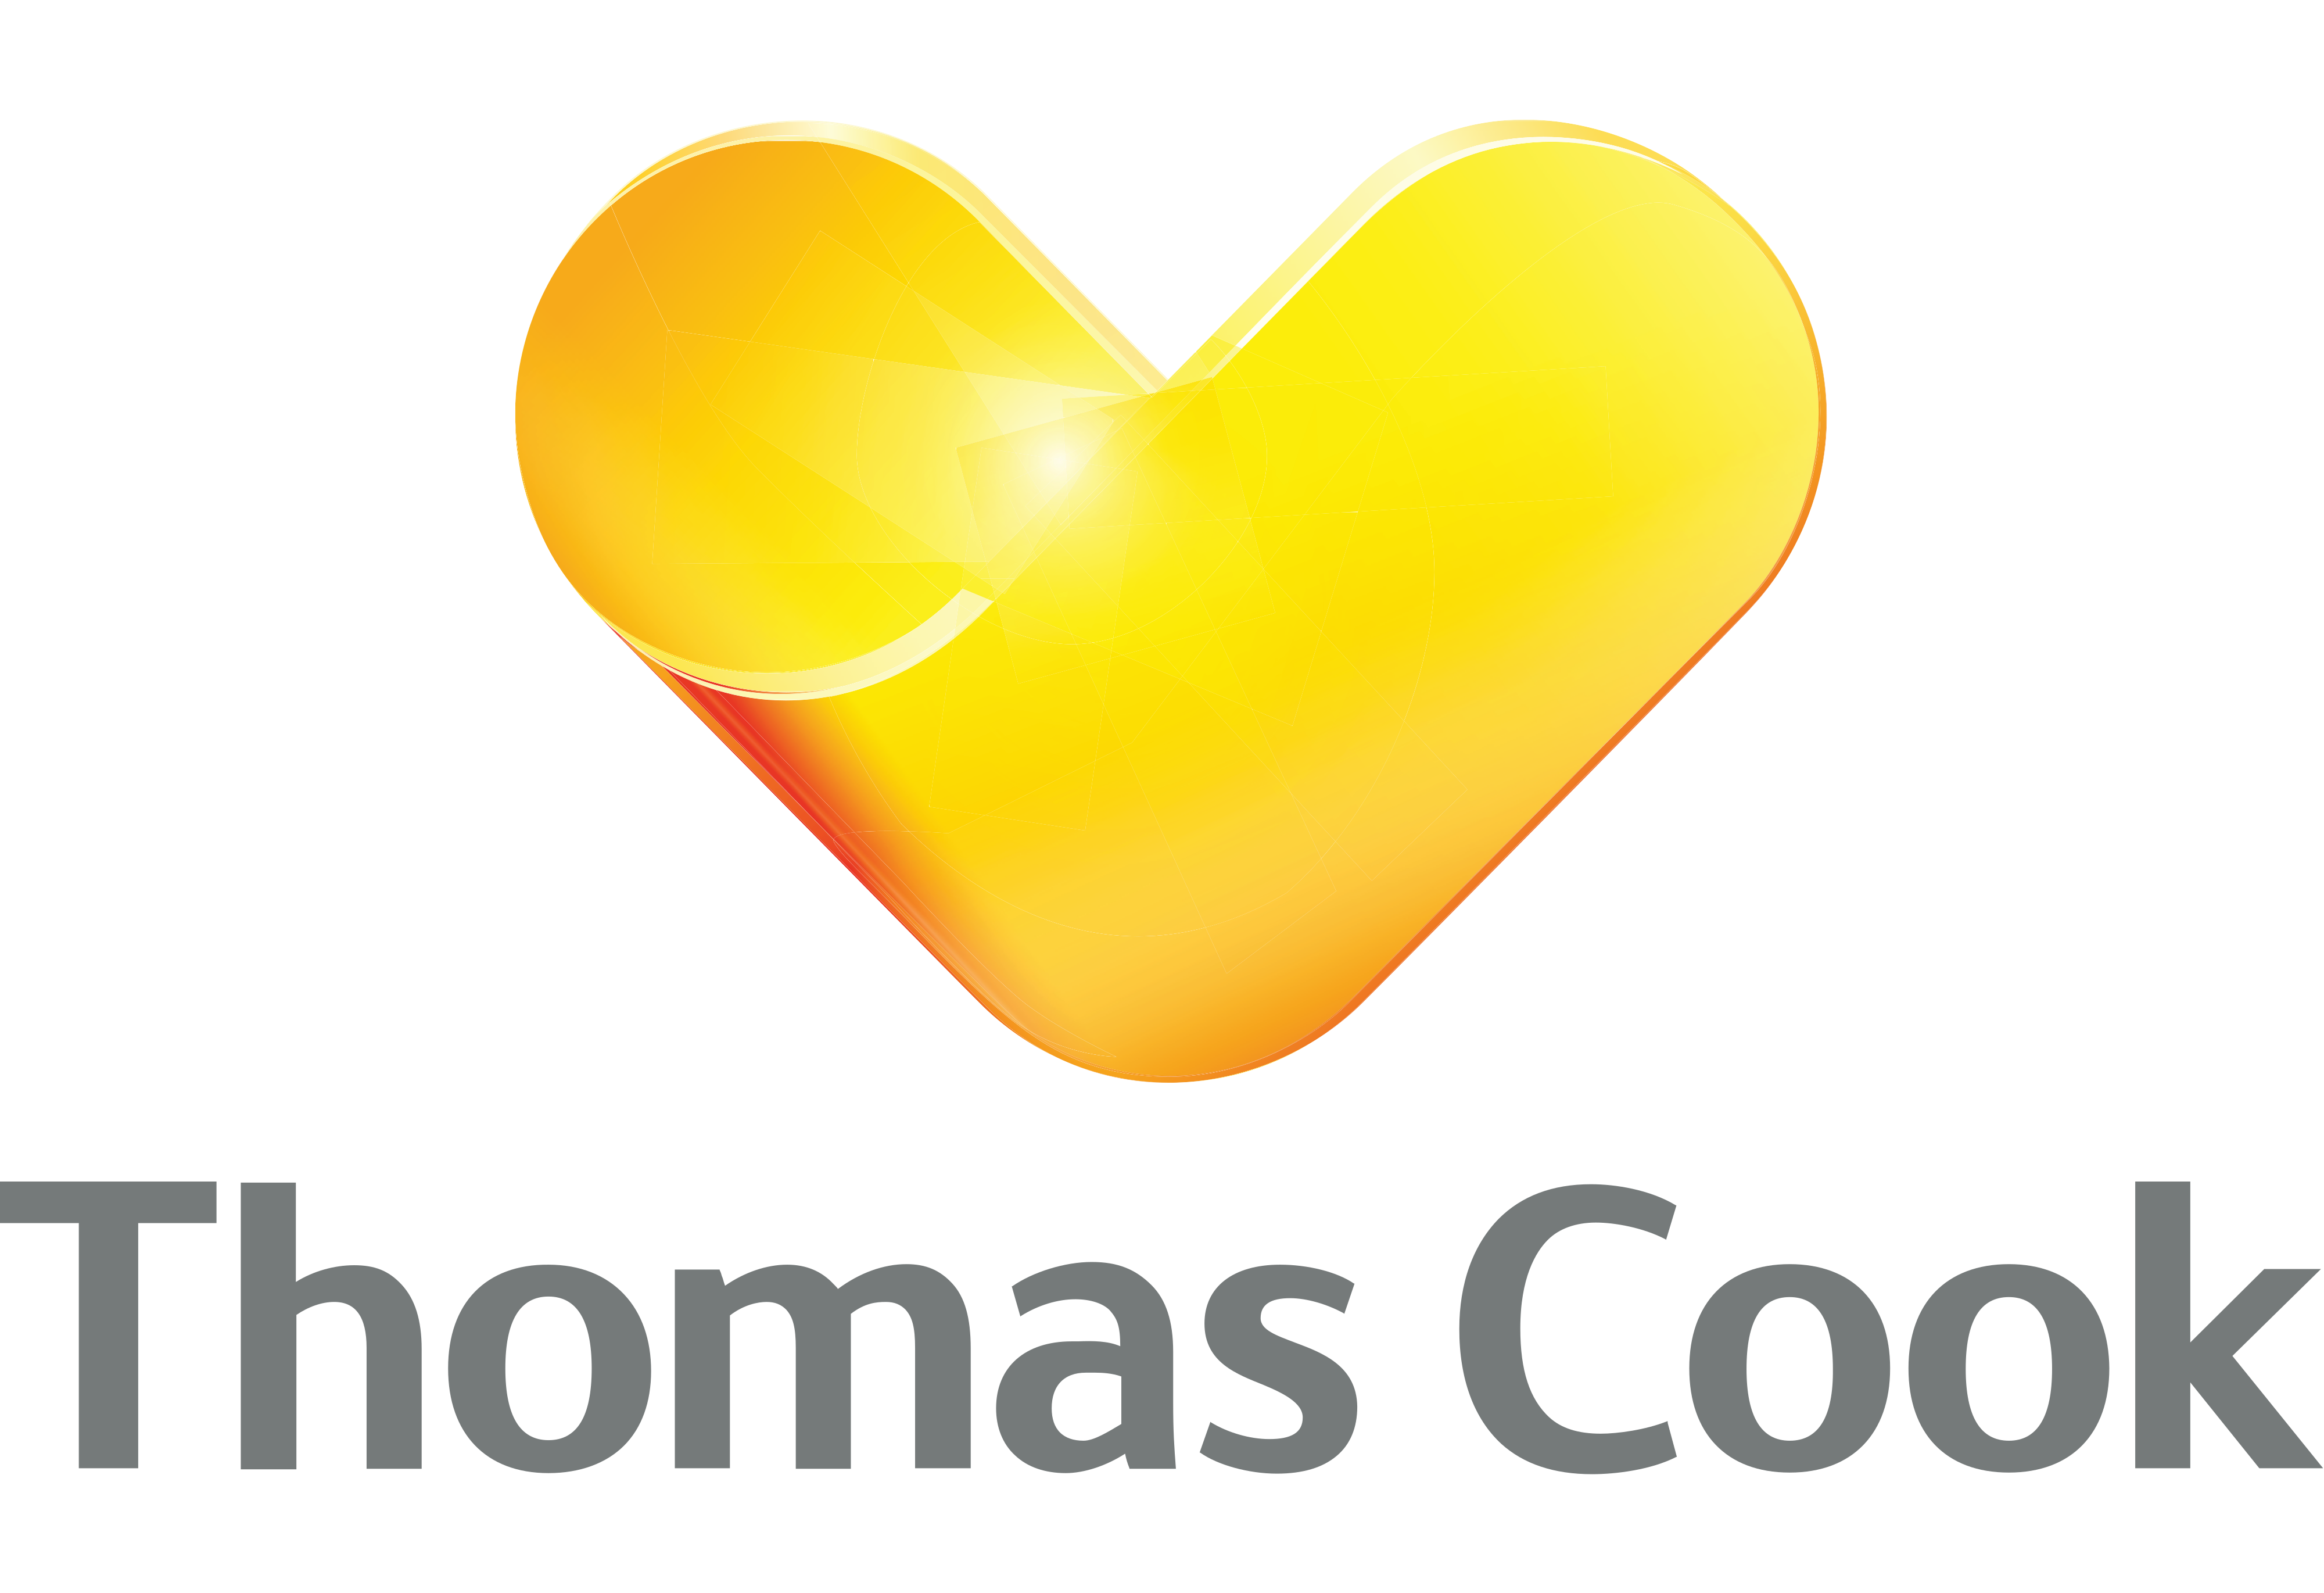 Thomas Cook logo - download.